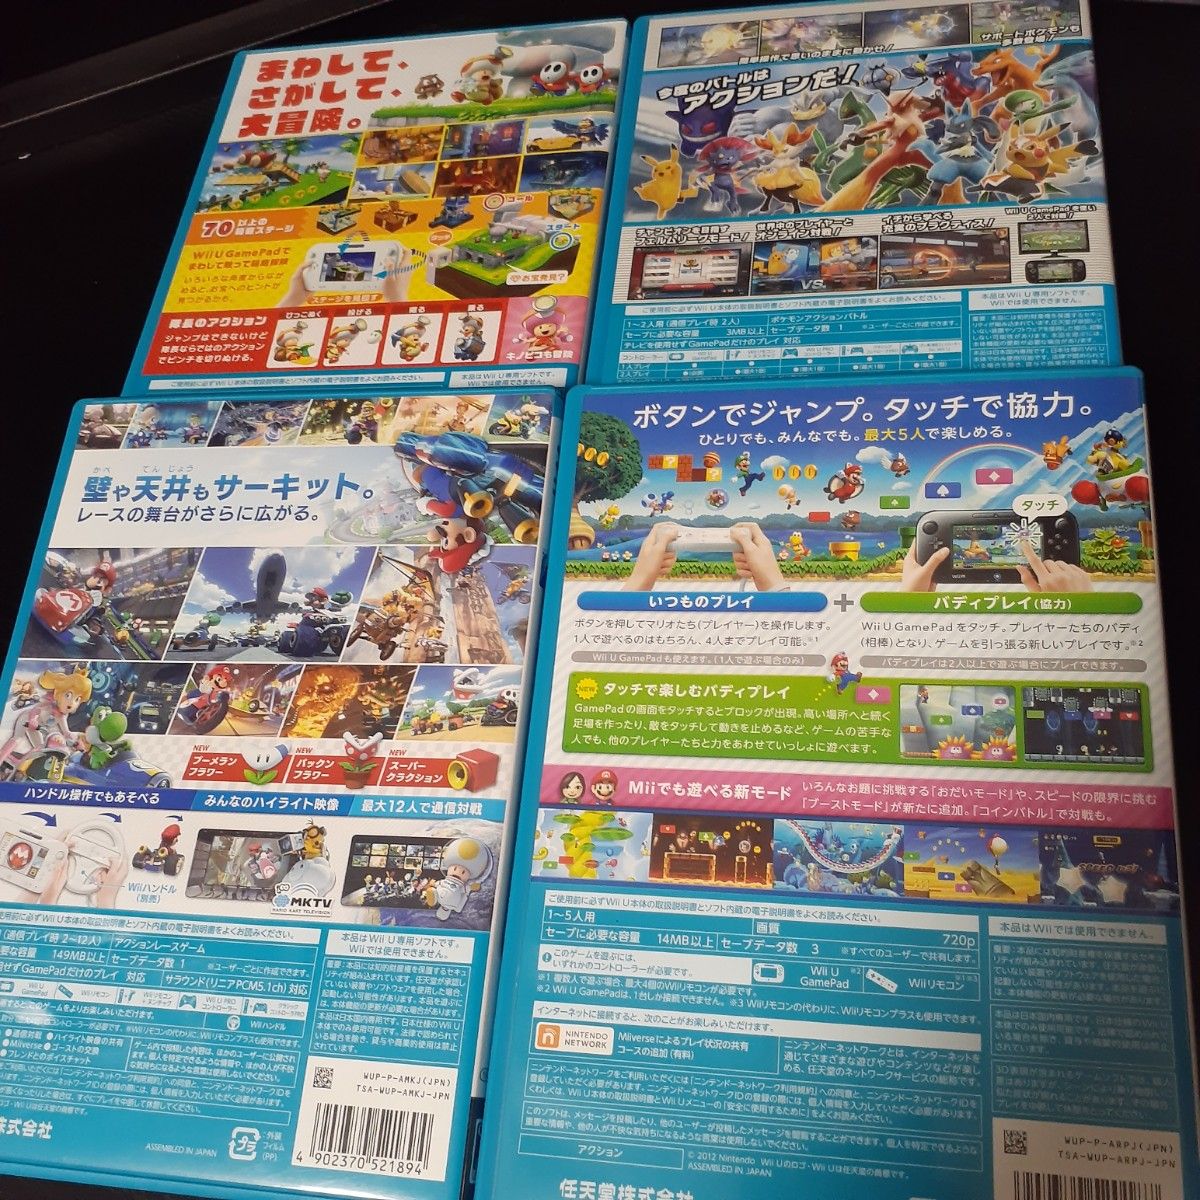 WiiU マリオカート8 進め!キノピオ隊長 スーパーマリオブラザースU ポッ拳トーナメント